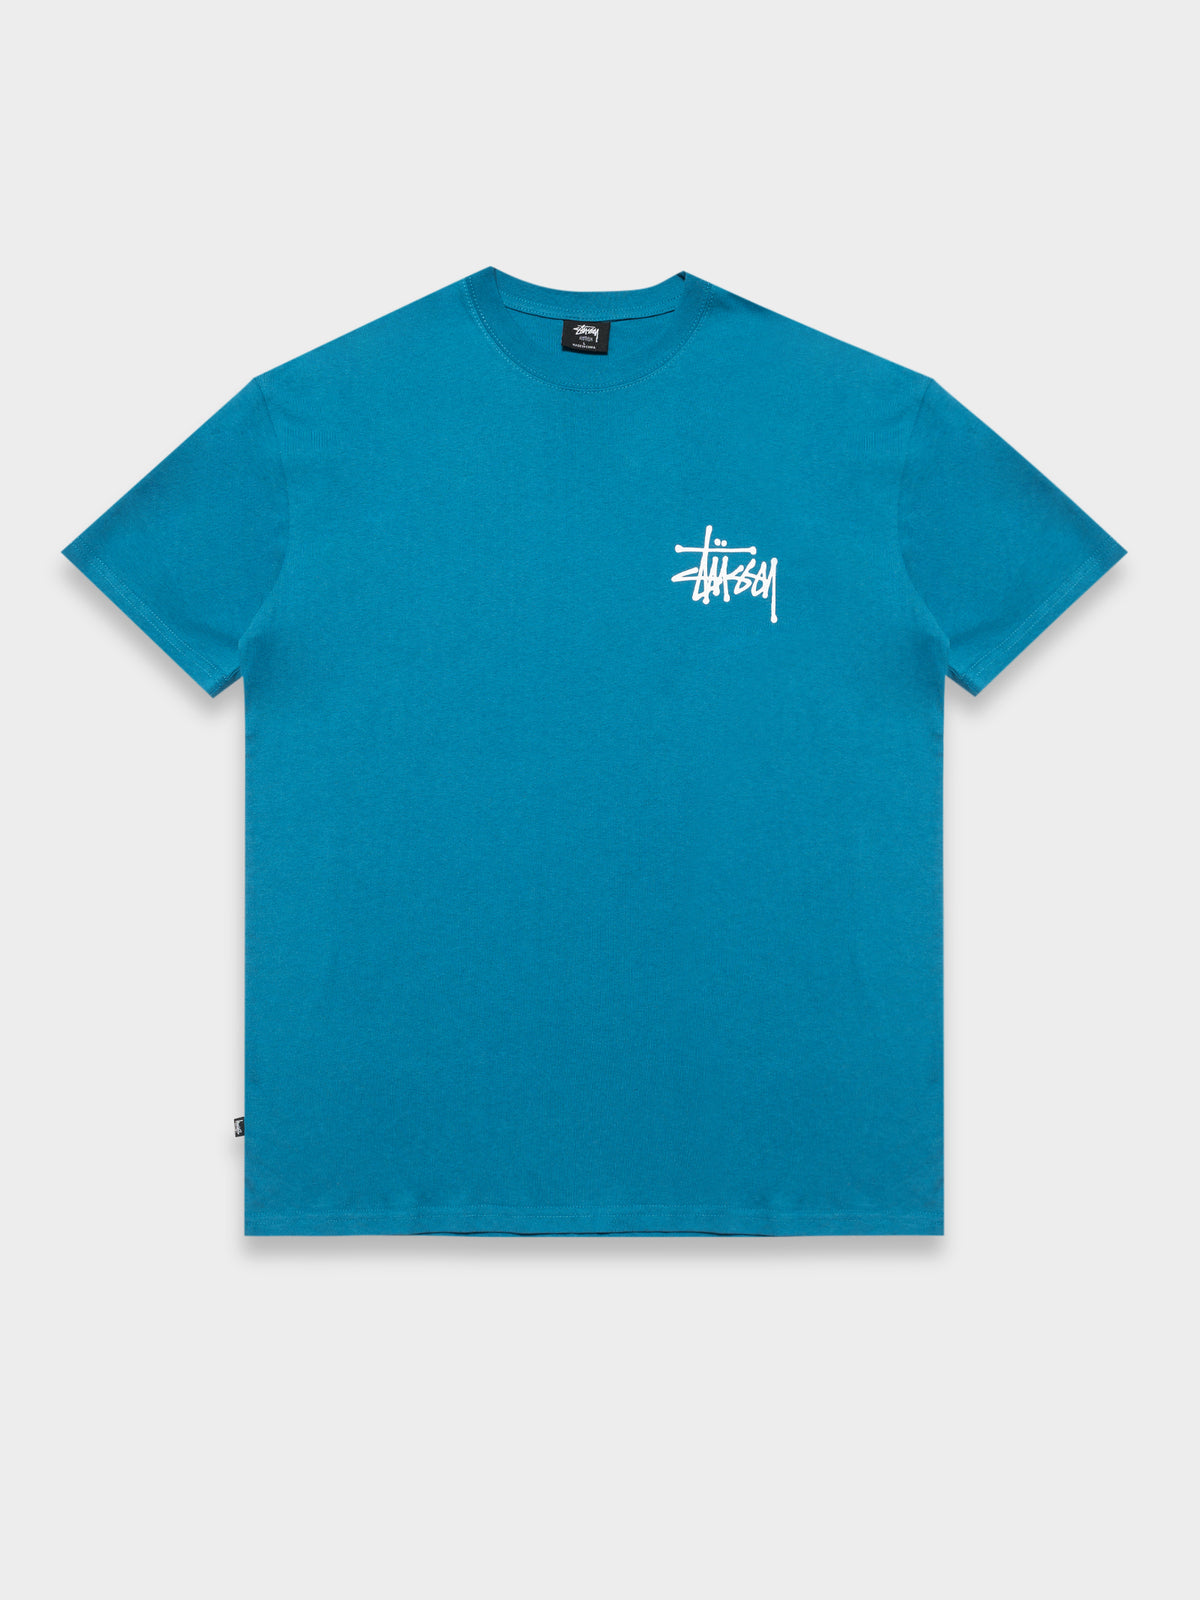 Graffitti Short Sleeve T-Shirt in Strong Blue